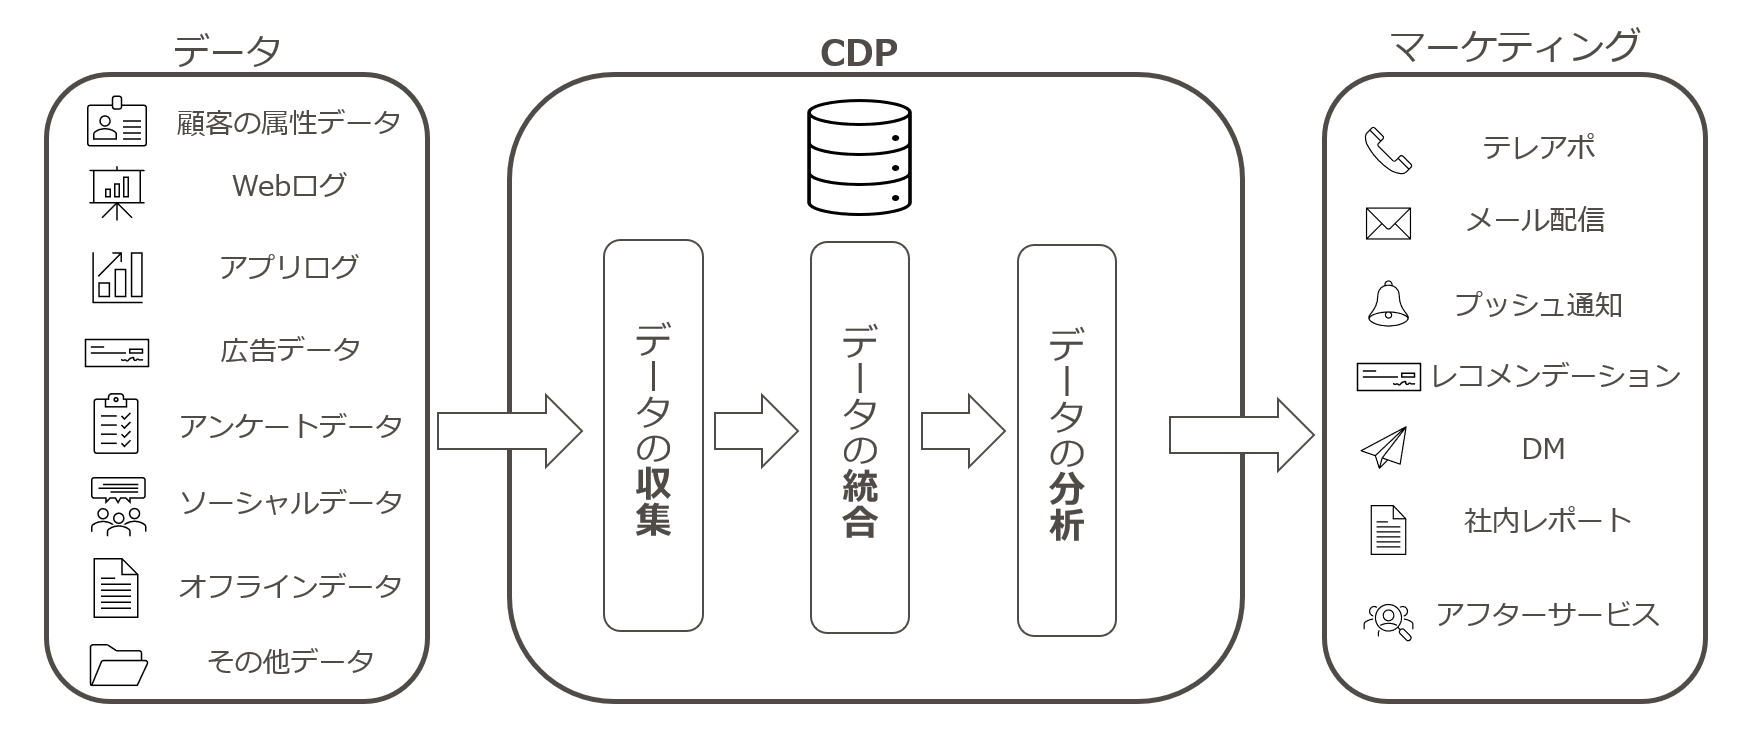 CDPの概要